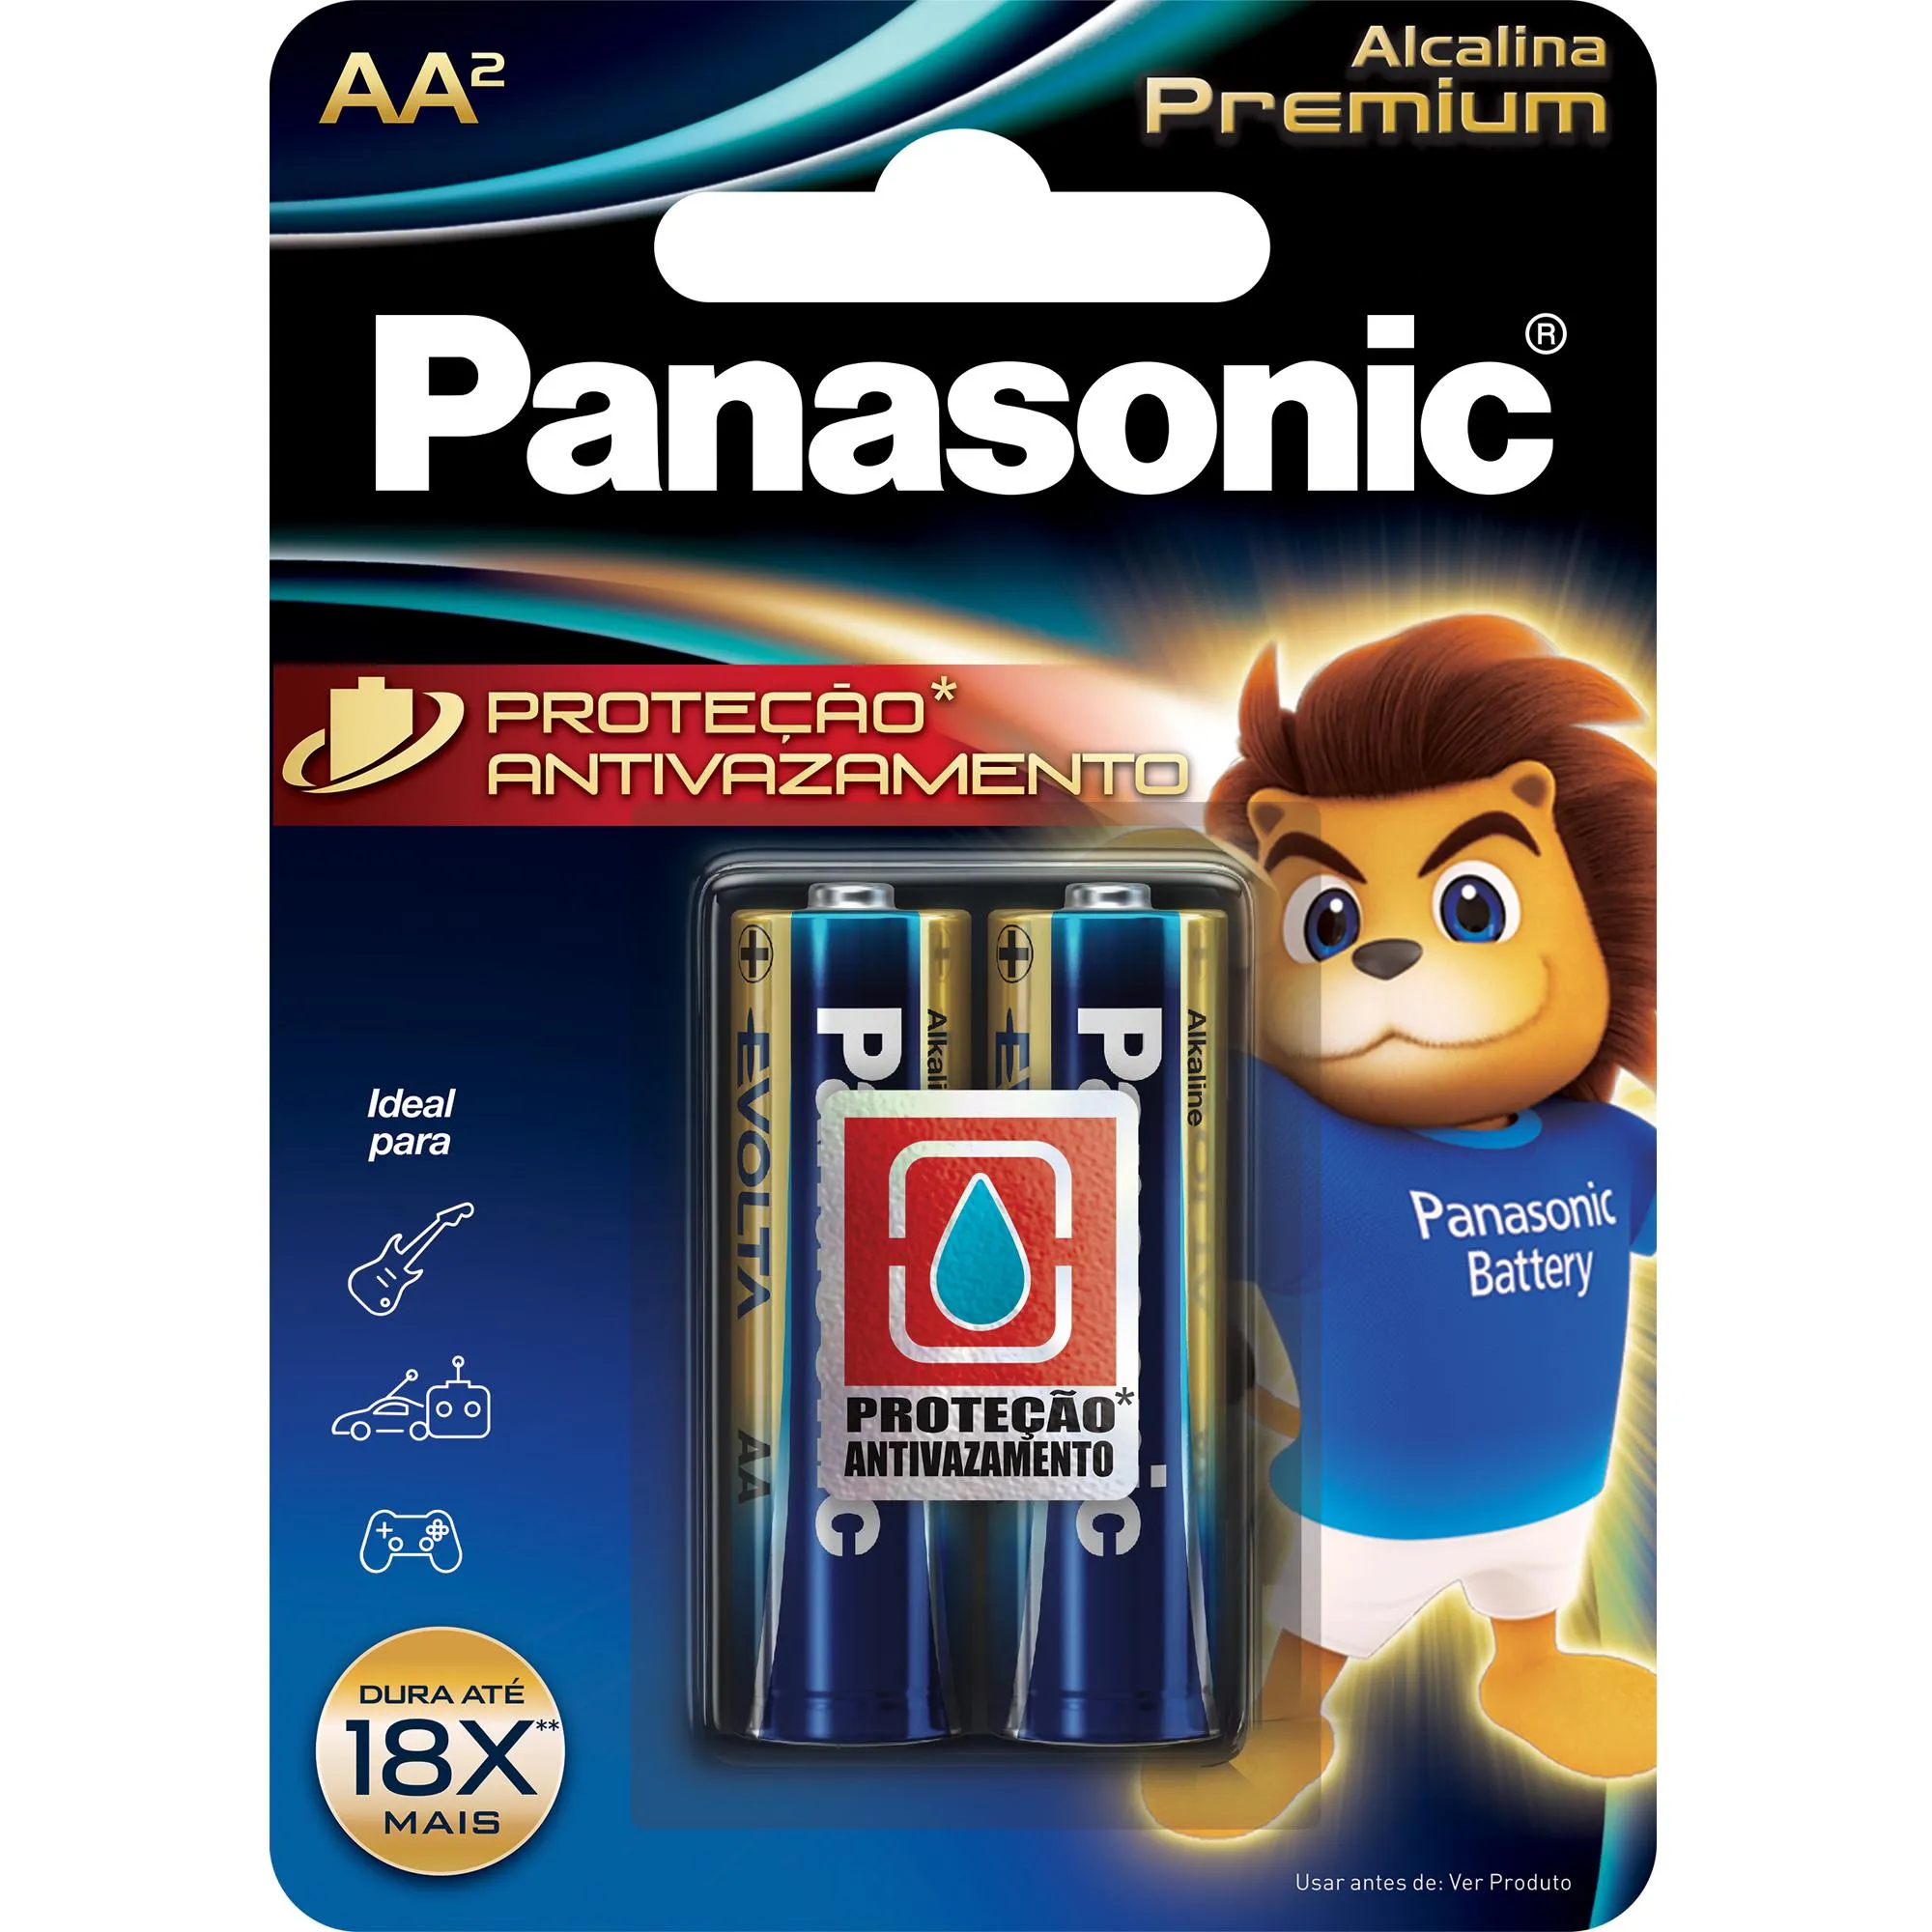 Pilha Alcalina 1,5V AA LR6 Premium (C/2 Pilhas) Panasonic por 9,99 à vista no boleto/pix ou parcele em até 1x sem juros. Compre na loja Mundomax!